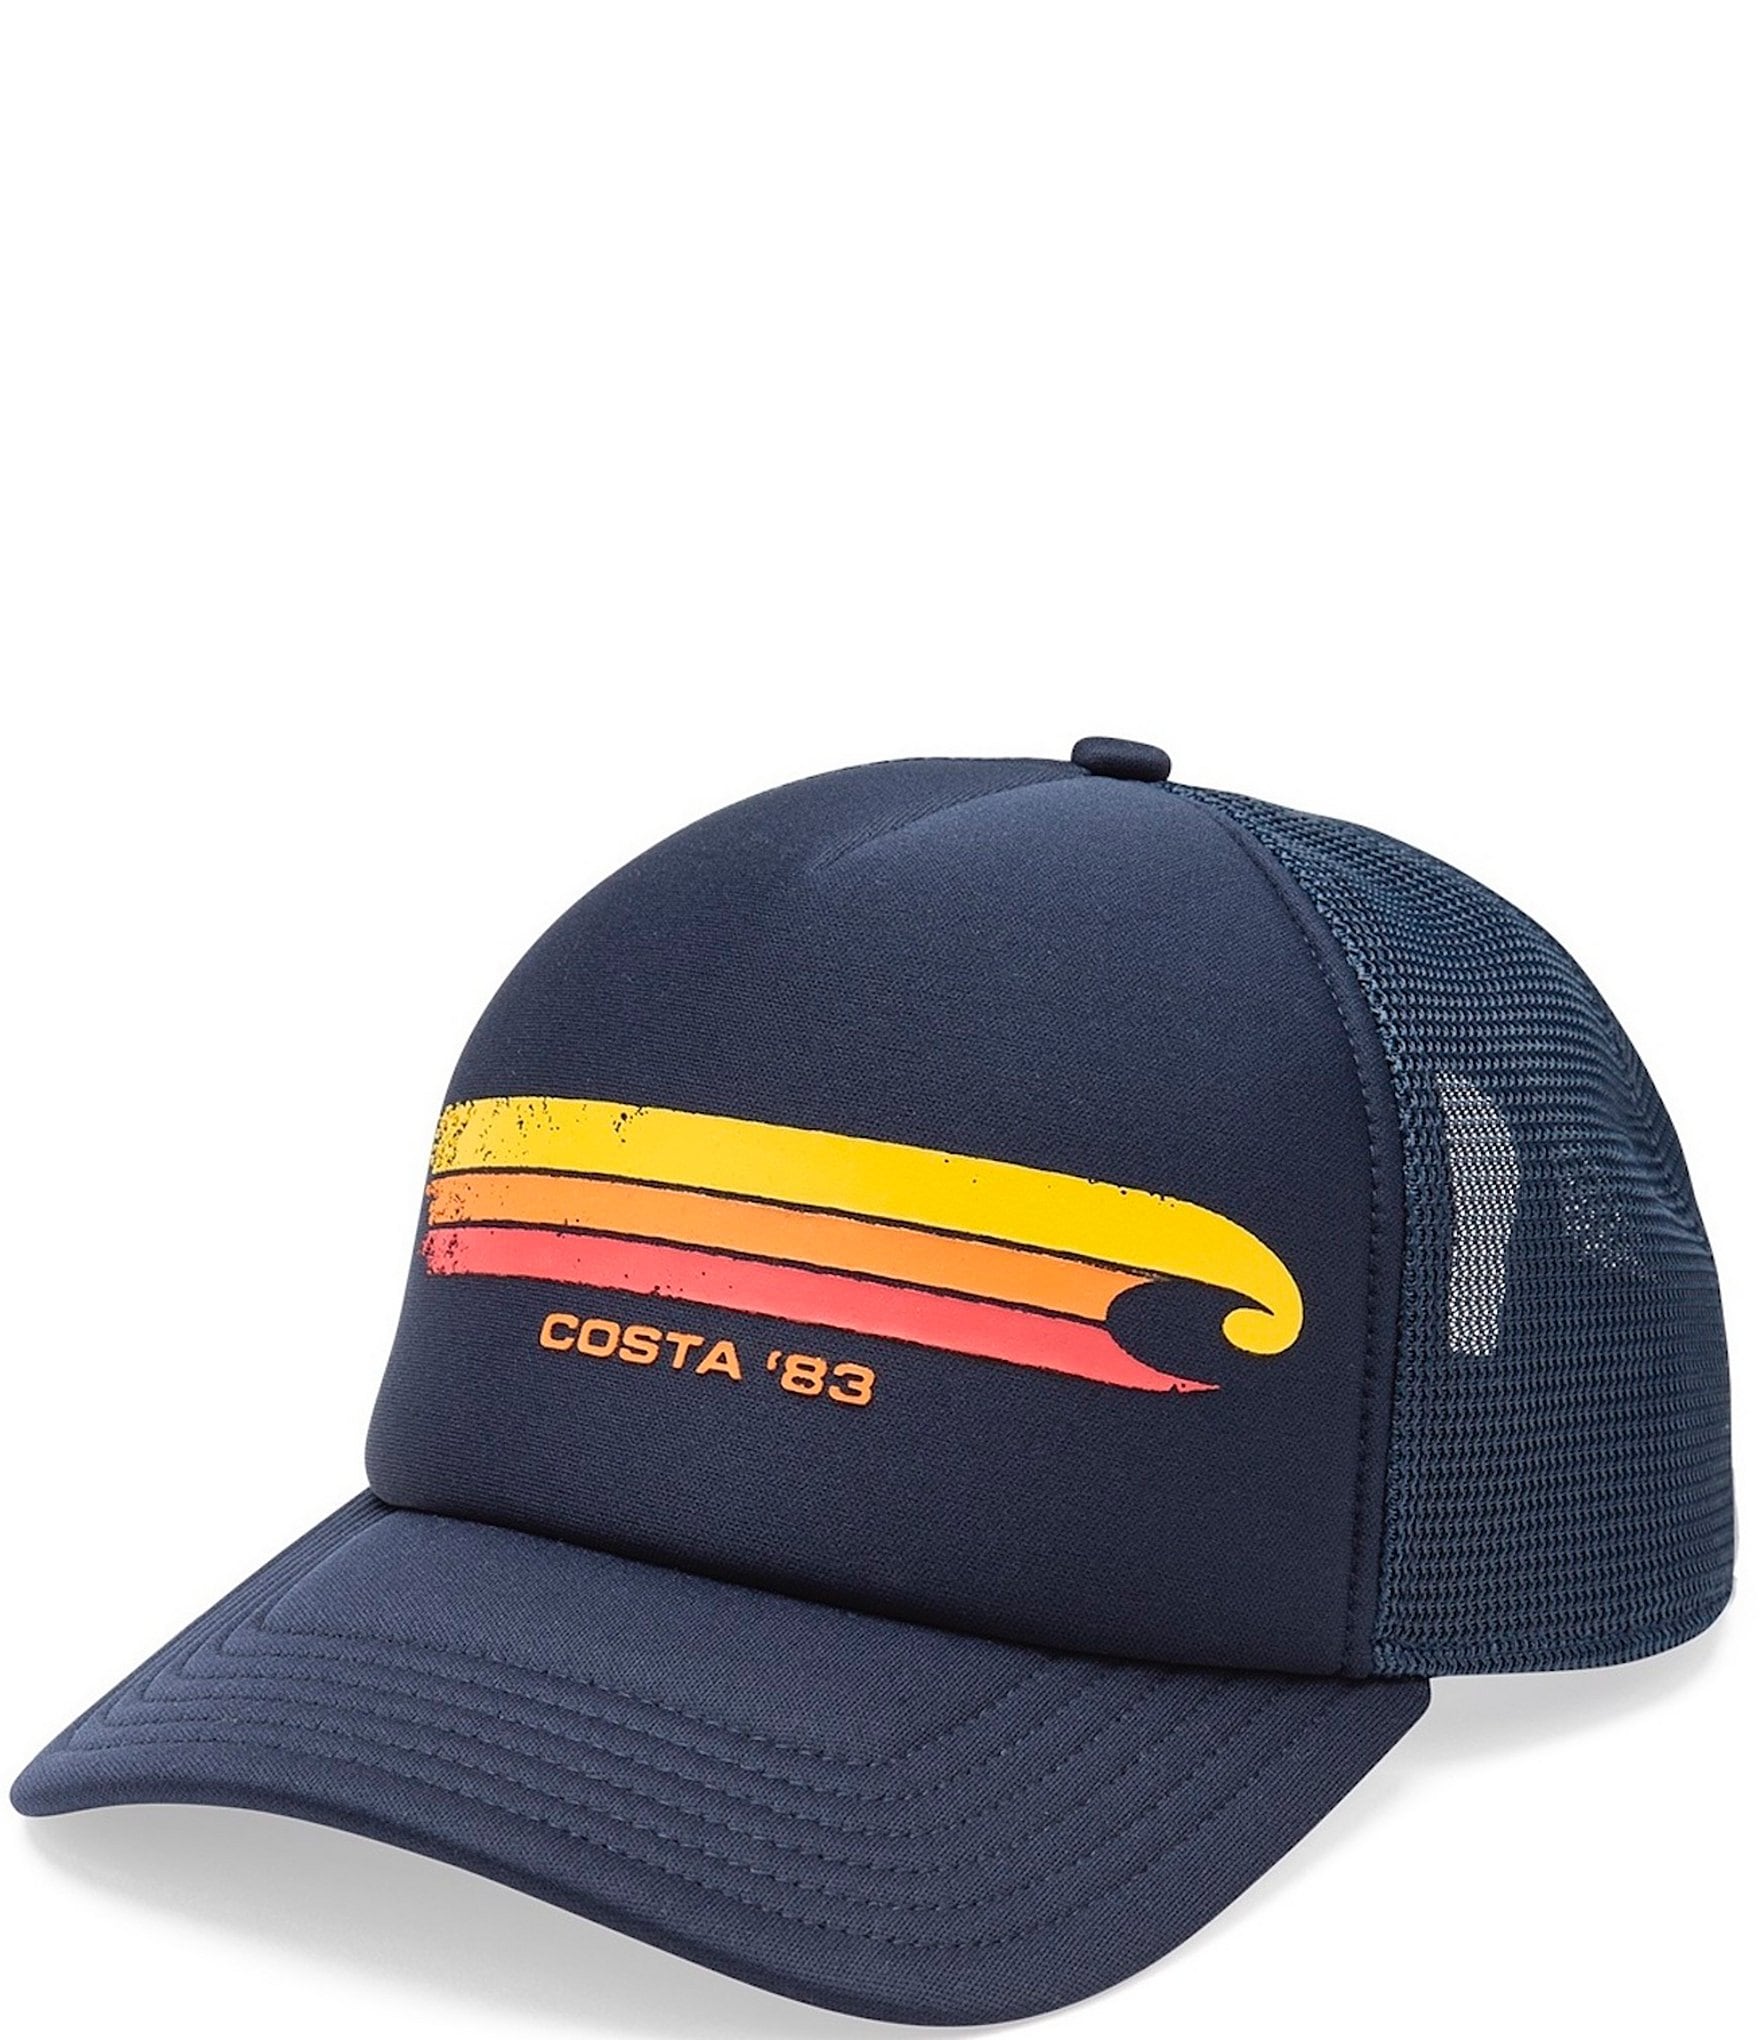 Costa Hang Loose Trucker Hat - Navy